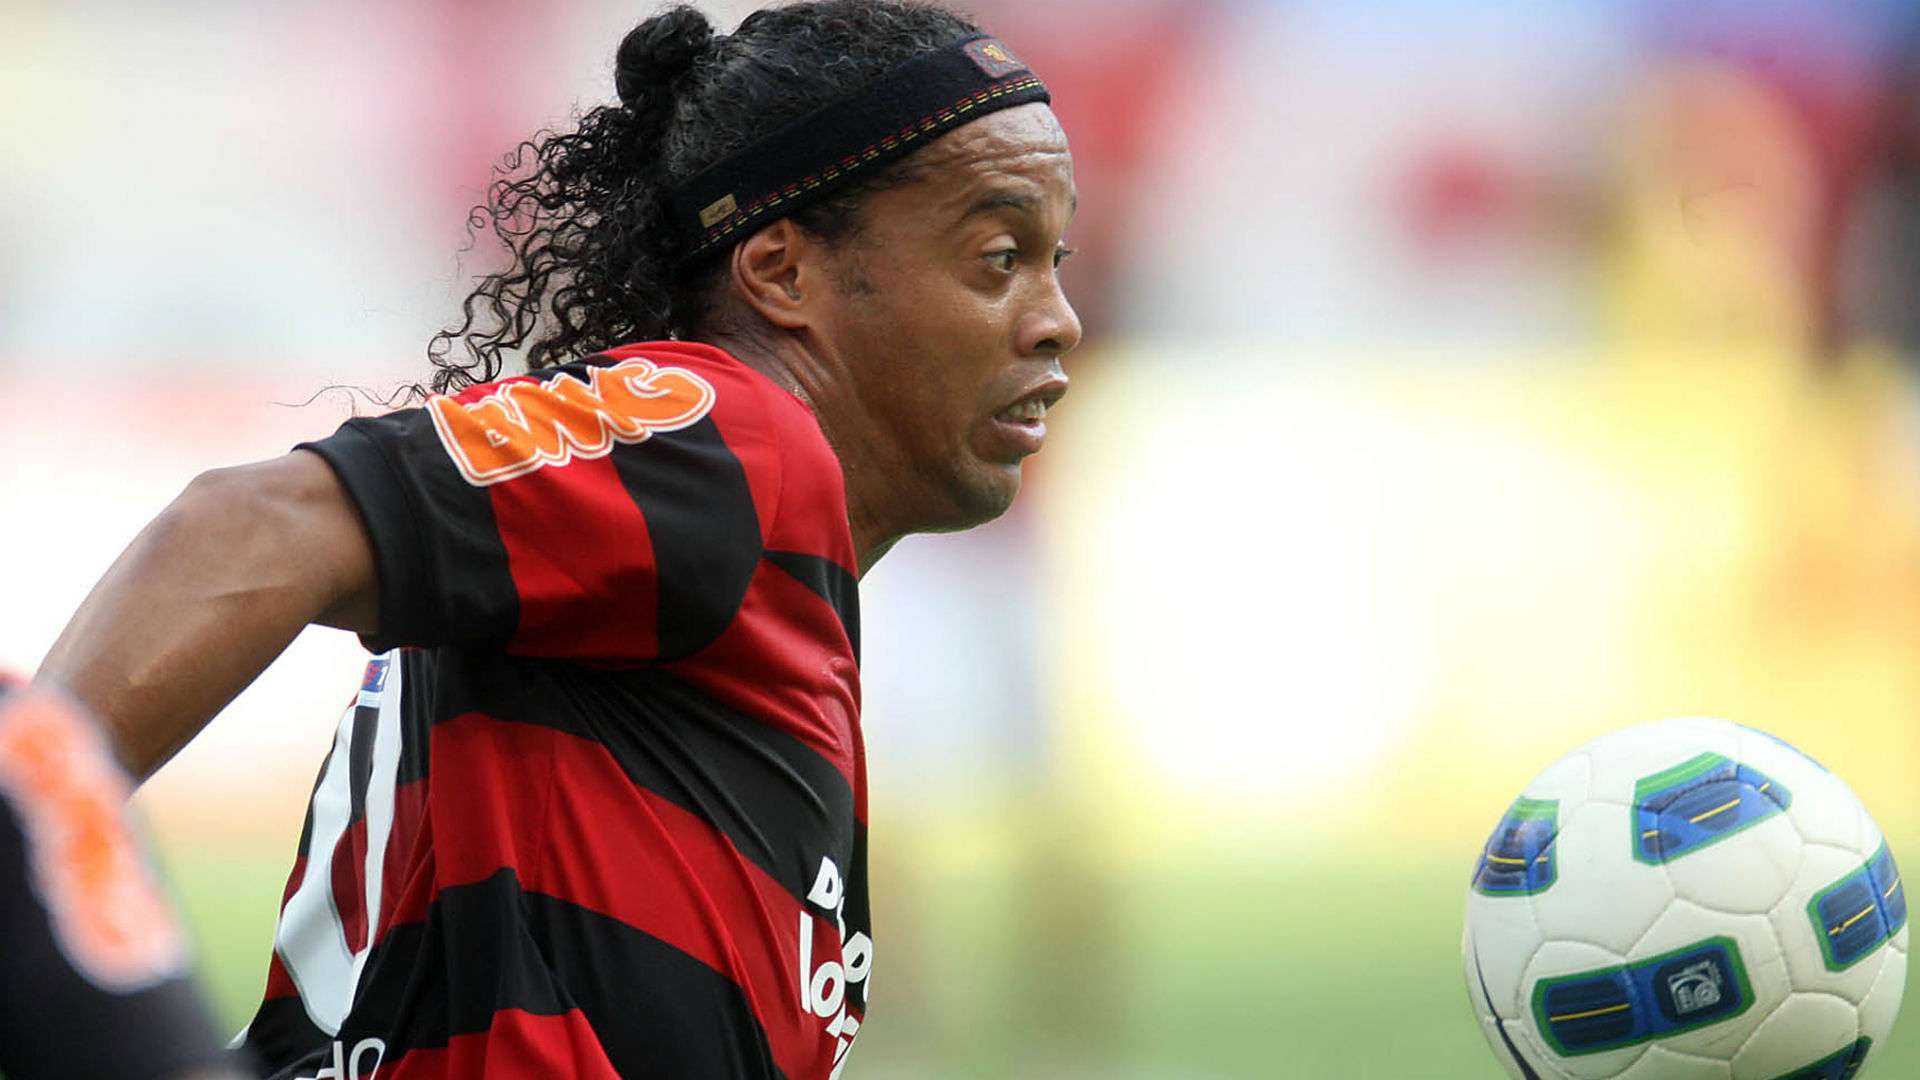 Ronaldinho Flamengo 2011 27 10 2019